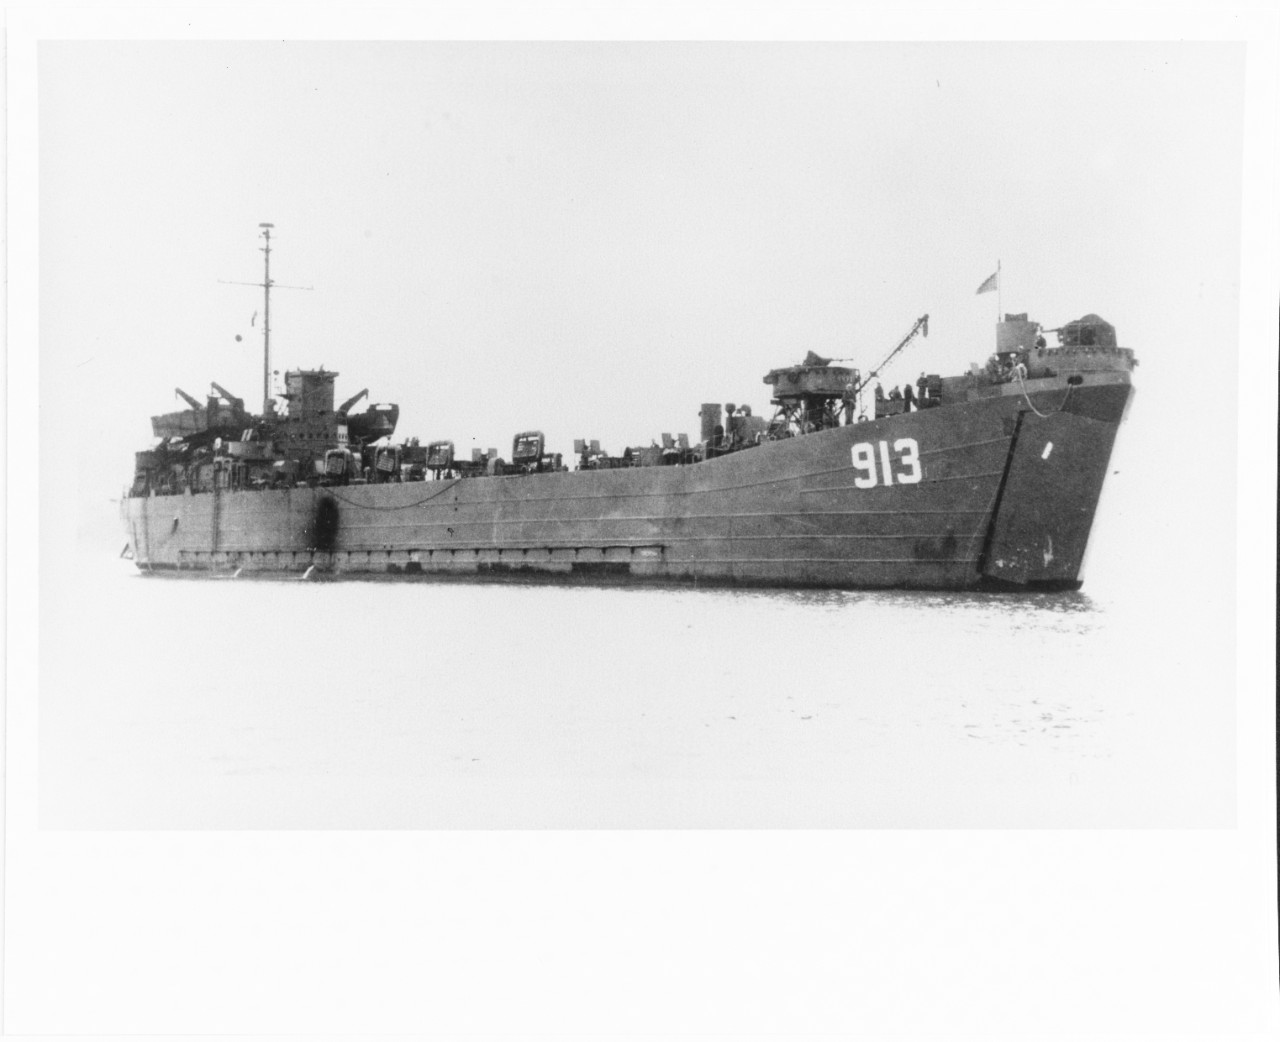 USS LST-913